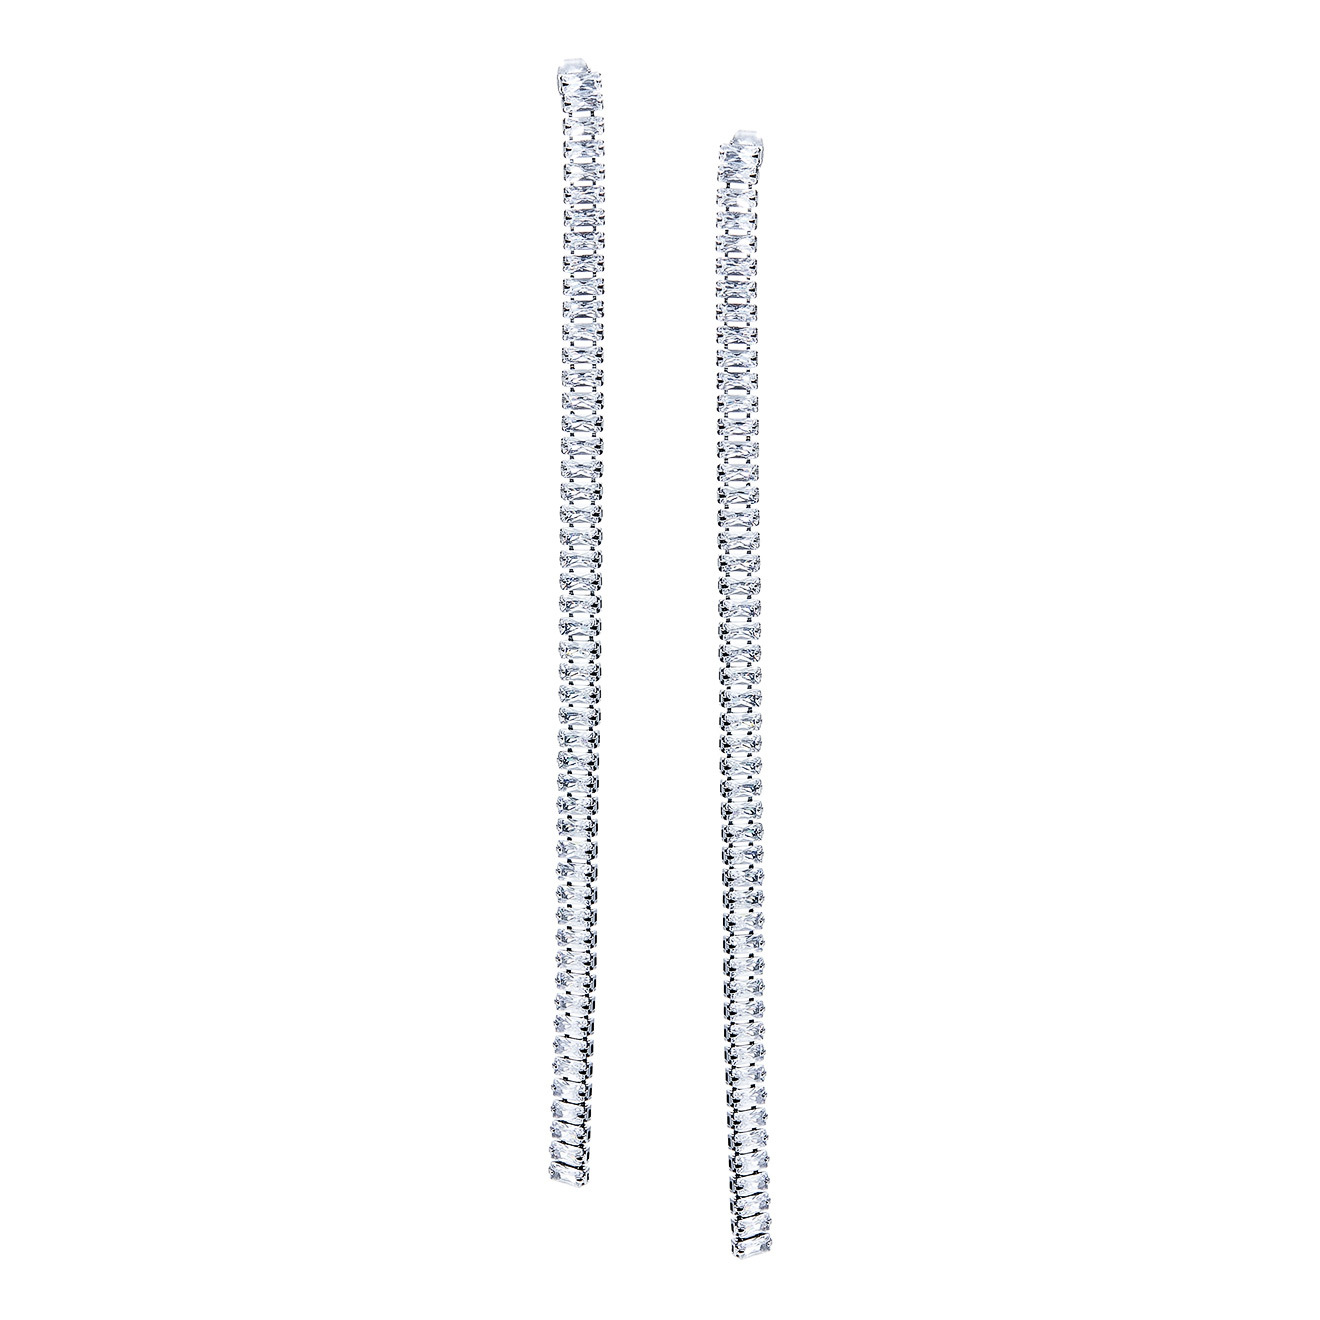 Herald Percy Серебристые длинные серьги-дорожки с кристаллами herald percy серебристые длинные серьги дорожки с кристаллами